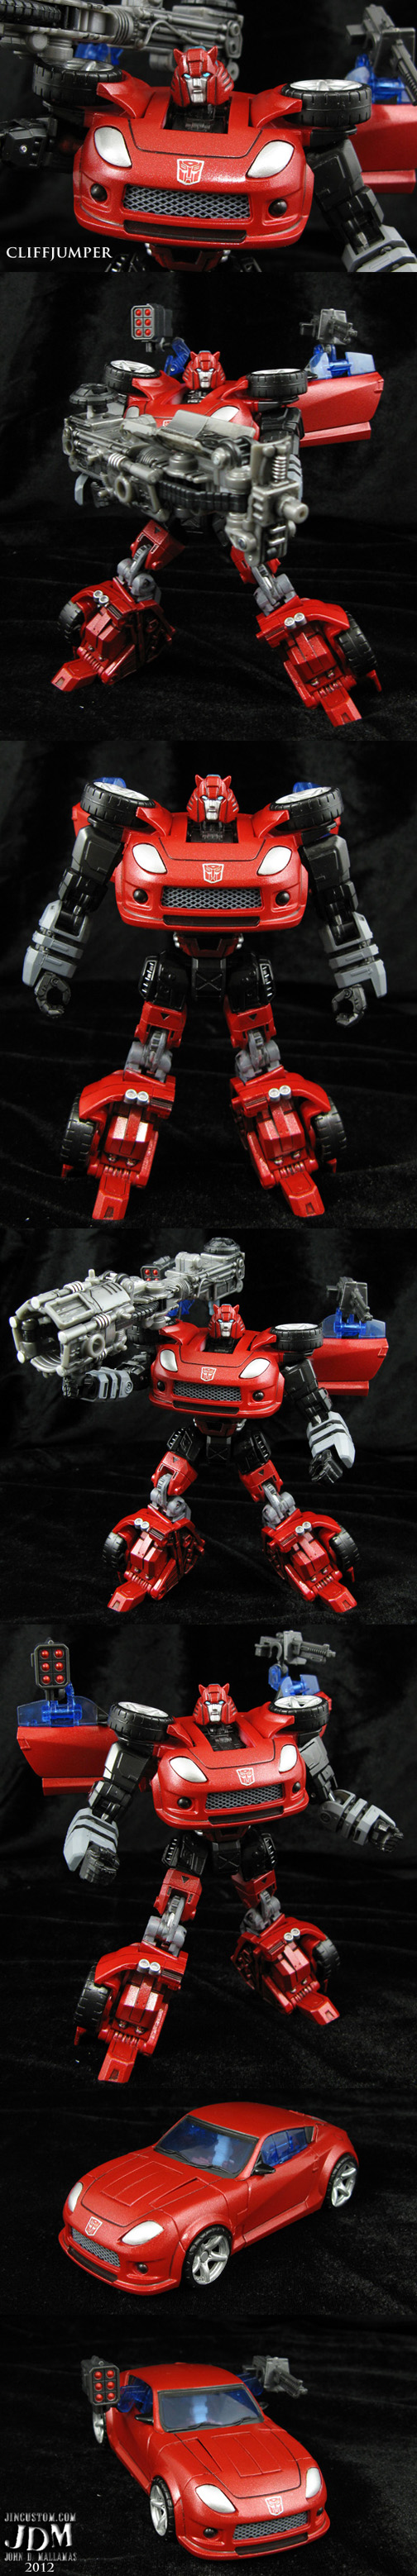 custom_transformers_cliffjumper_by_jin_saotome-d5i3ej5.jpg